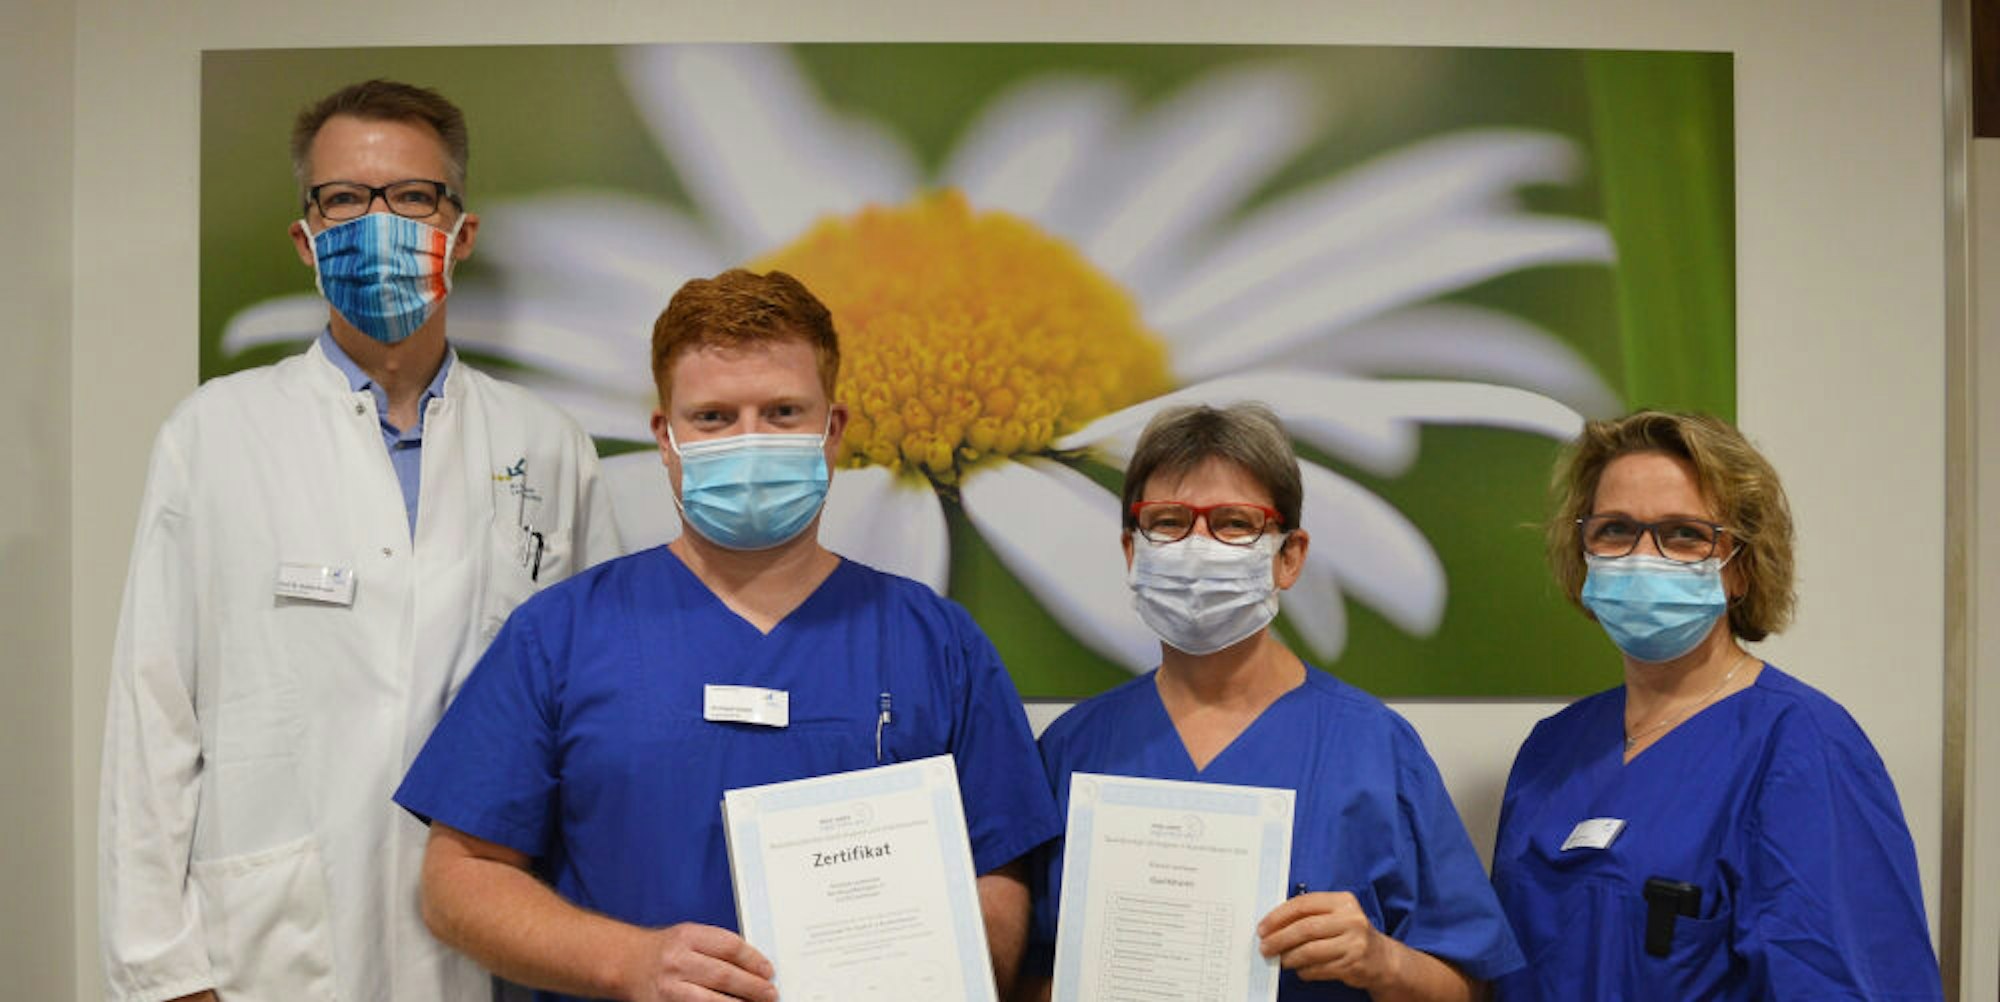 Stefan Reuter, Christoph Liebelt, Brigitte Müller und Gisela Kasper sind zuständig für die Krankenhaushygiene im Klinikum Leverkusen.